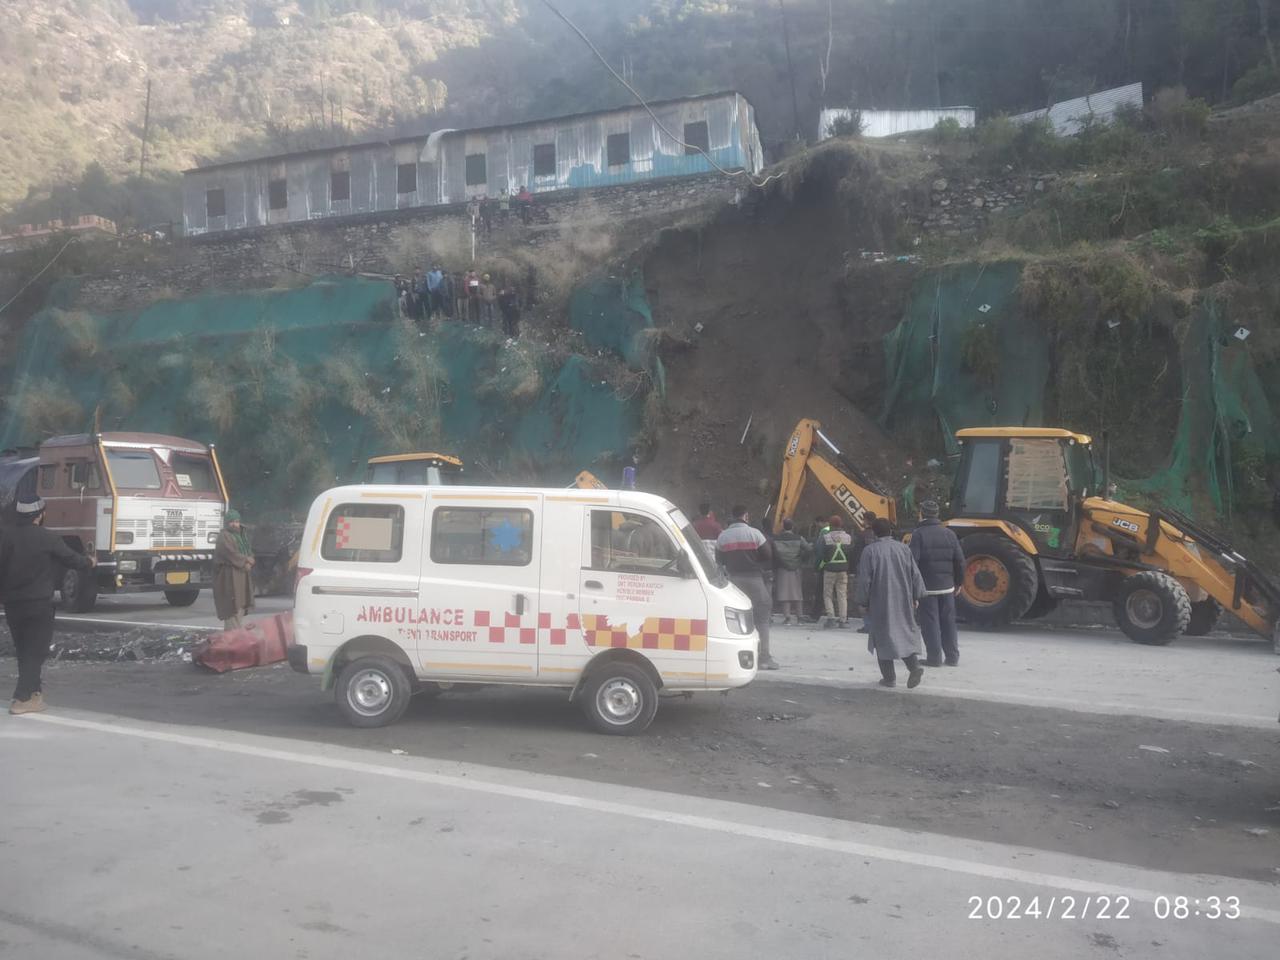 Labourer from UP dies under landslide on Highway